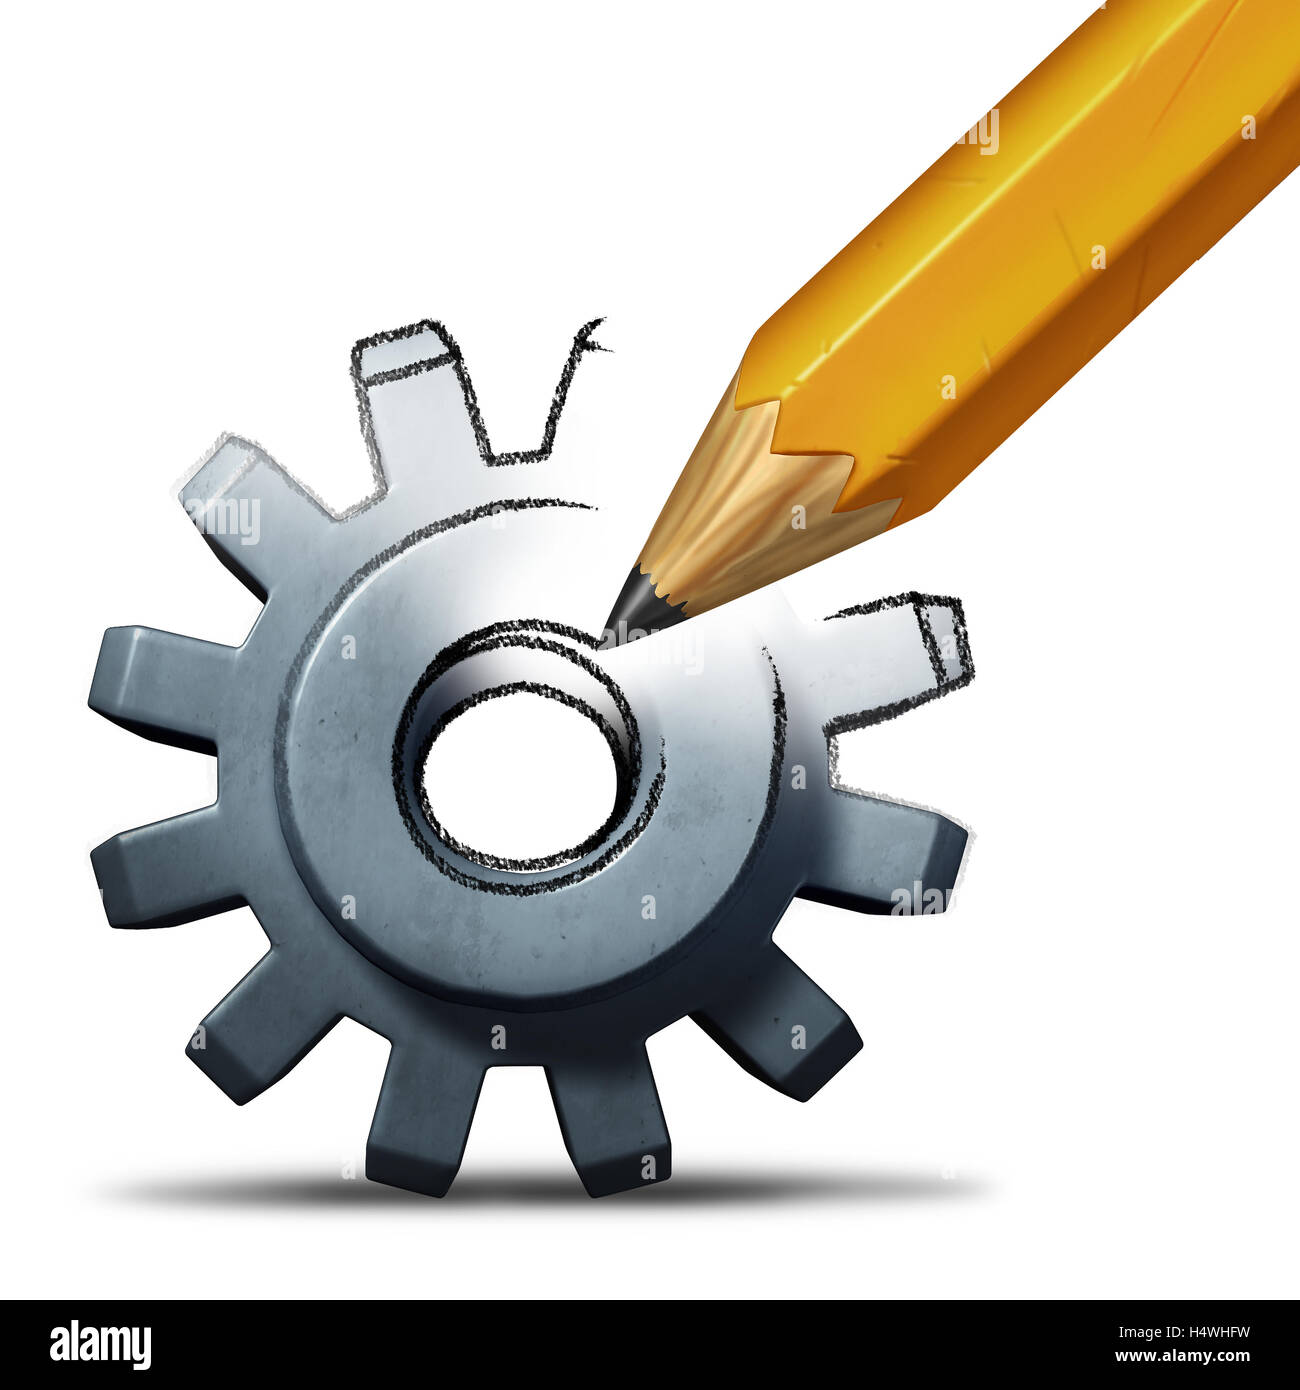 Réparation et restauration d'entreprise concept comme un dessin au crayon d'un engrenage ou cog comme une industrie et la réussite financière d'un symbole ou d'invention Banque D'Images